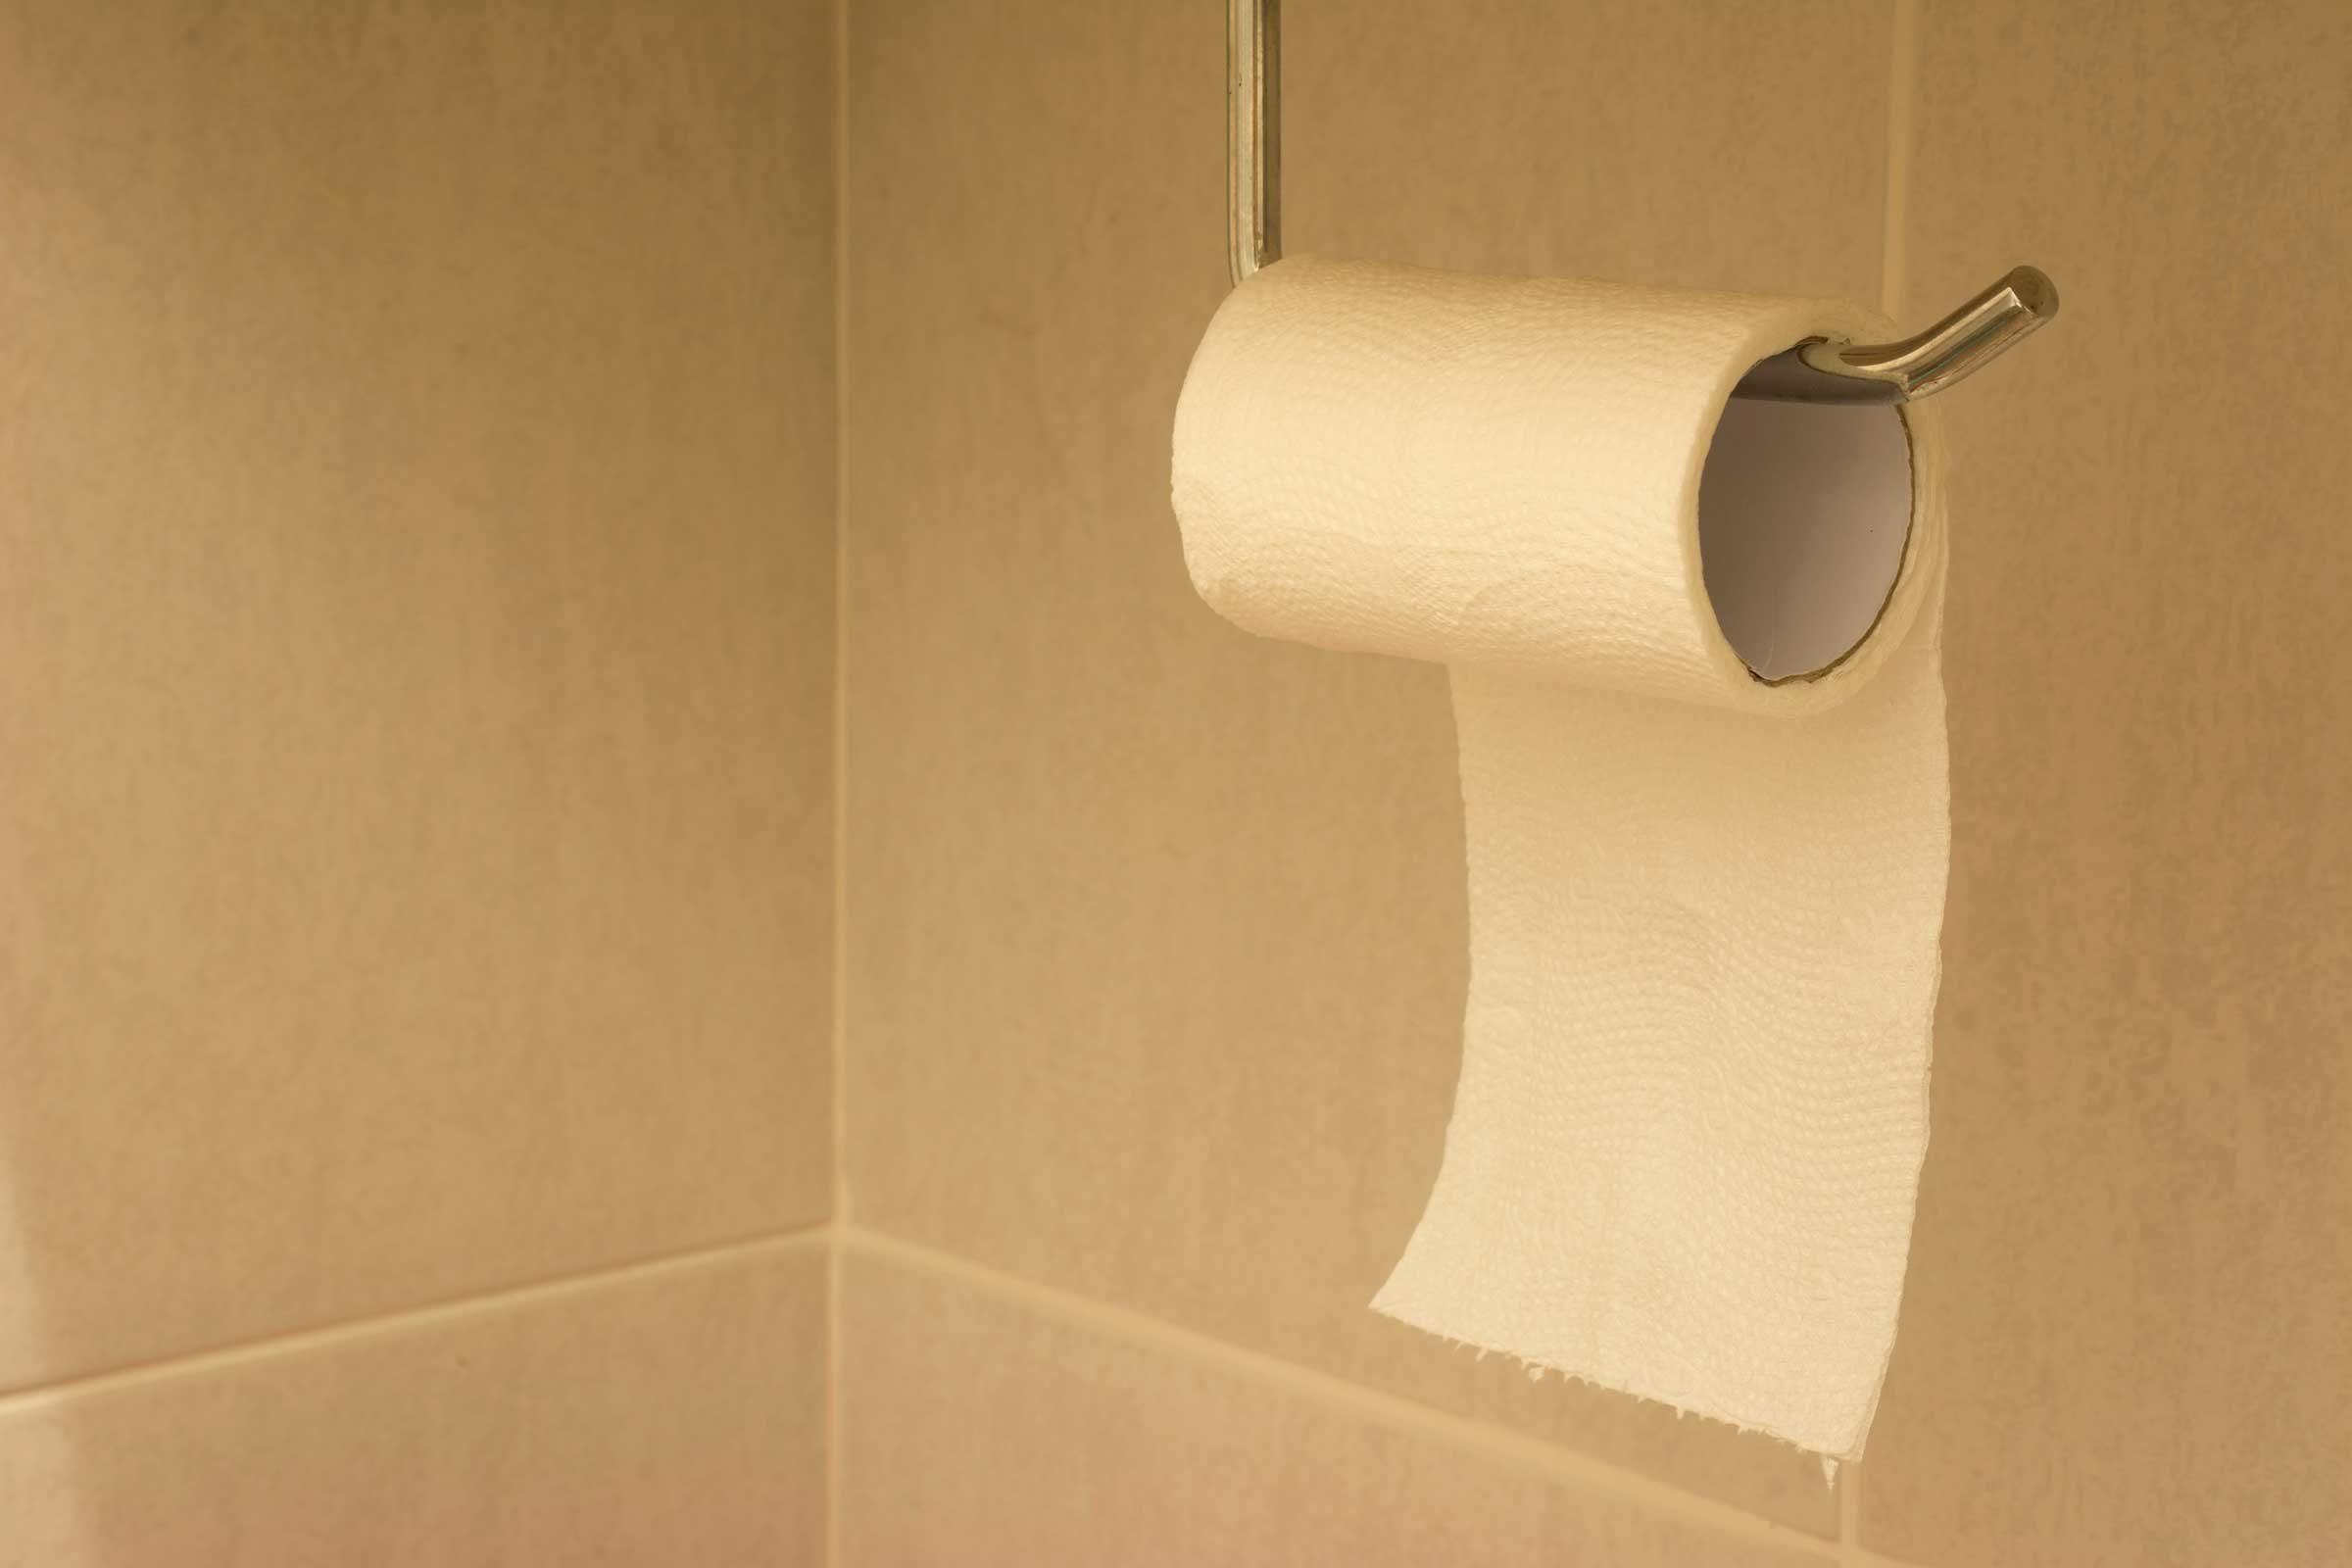 Toilet paper up anus  pic